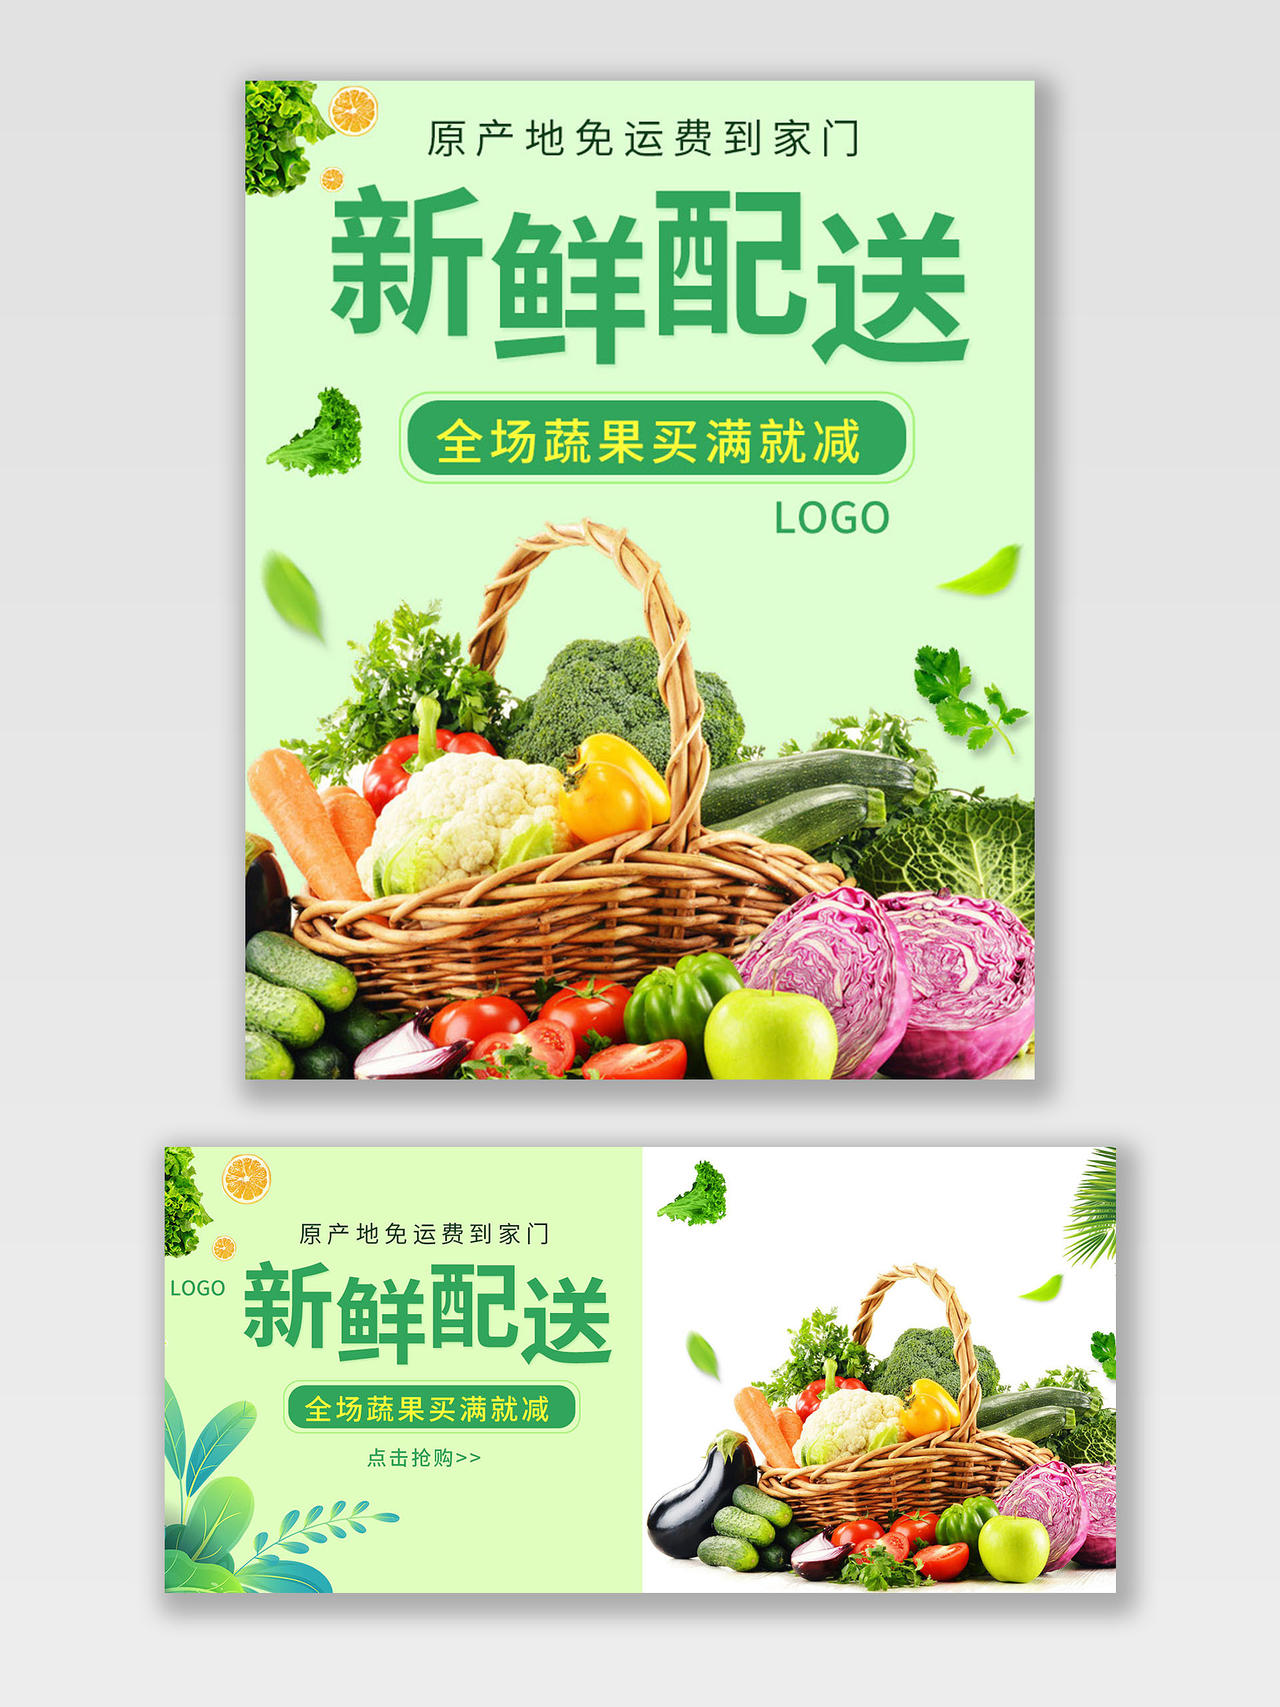 绿色平面风格新鲜送达品类优惠蔬菜海报banner电商模板